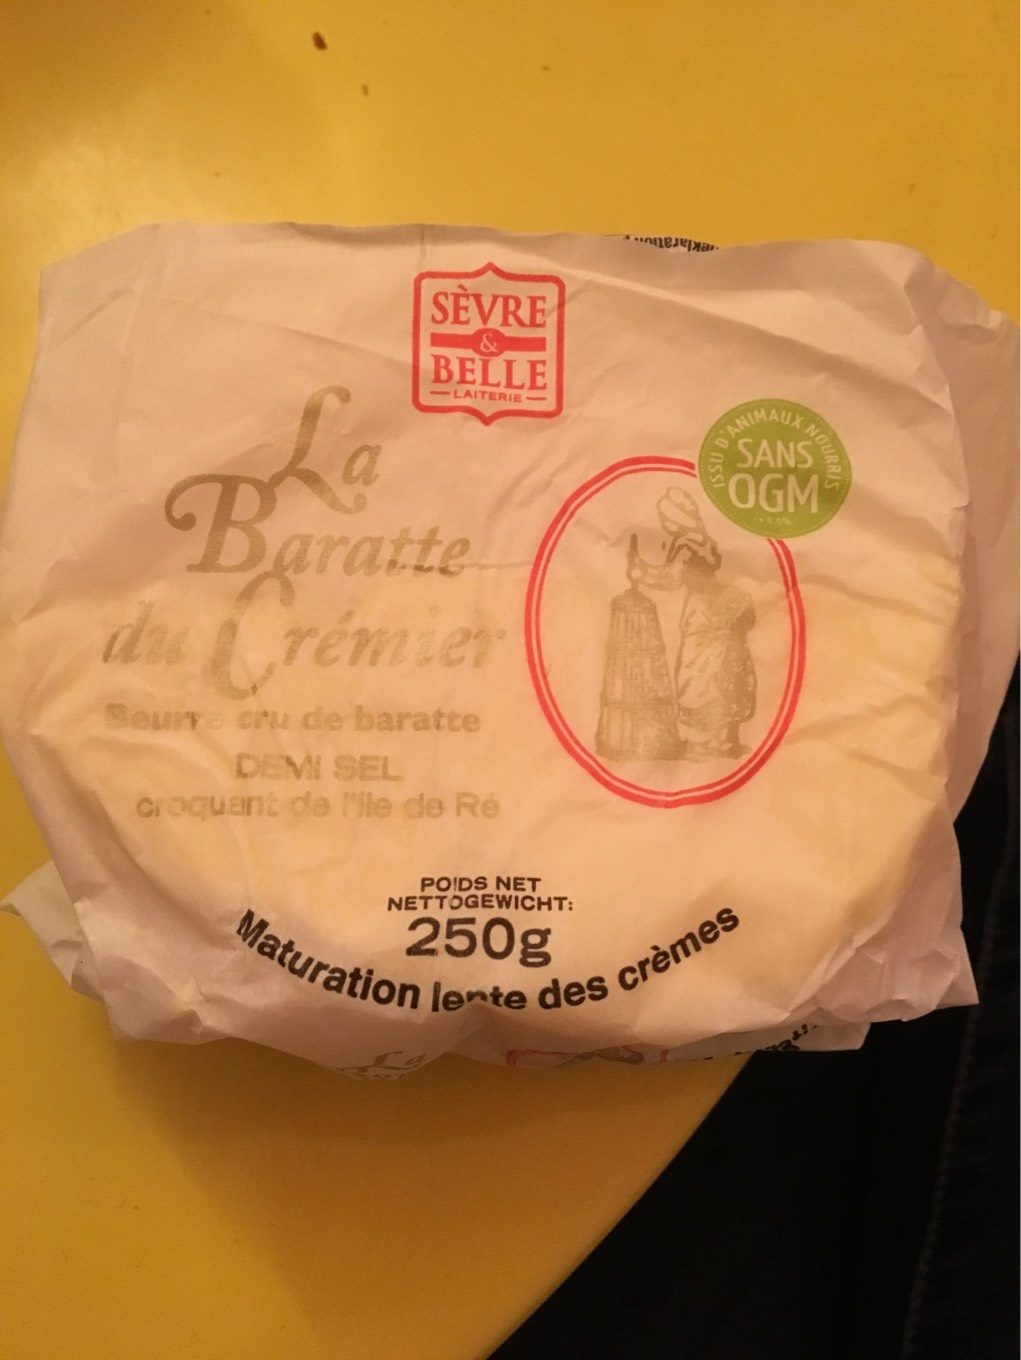 La baratte du crémier - Beurre demi-sel - Producto - fr